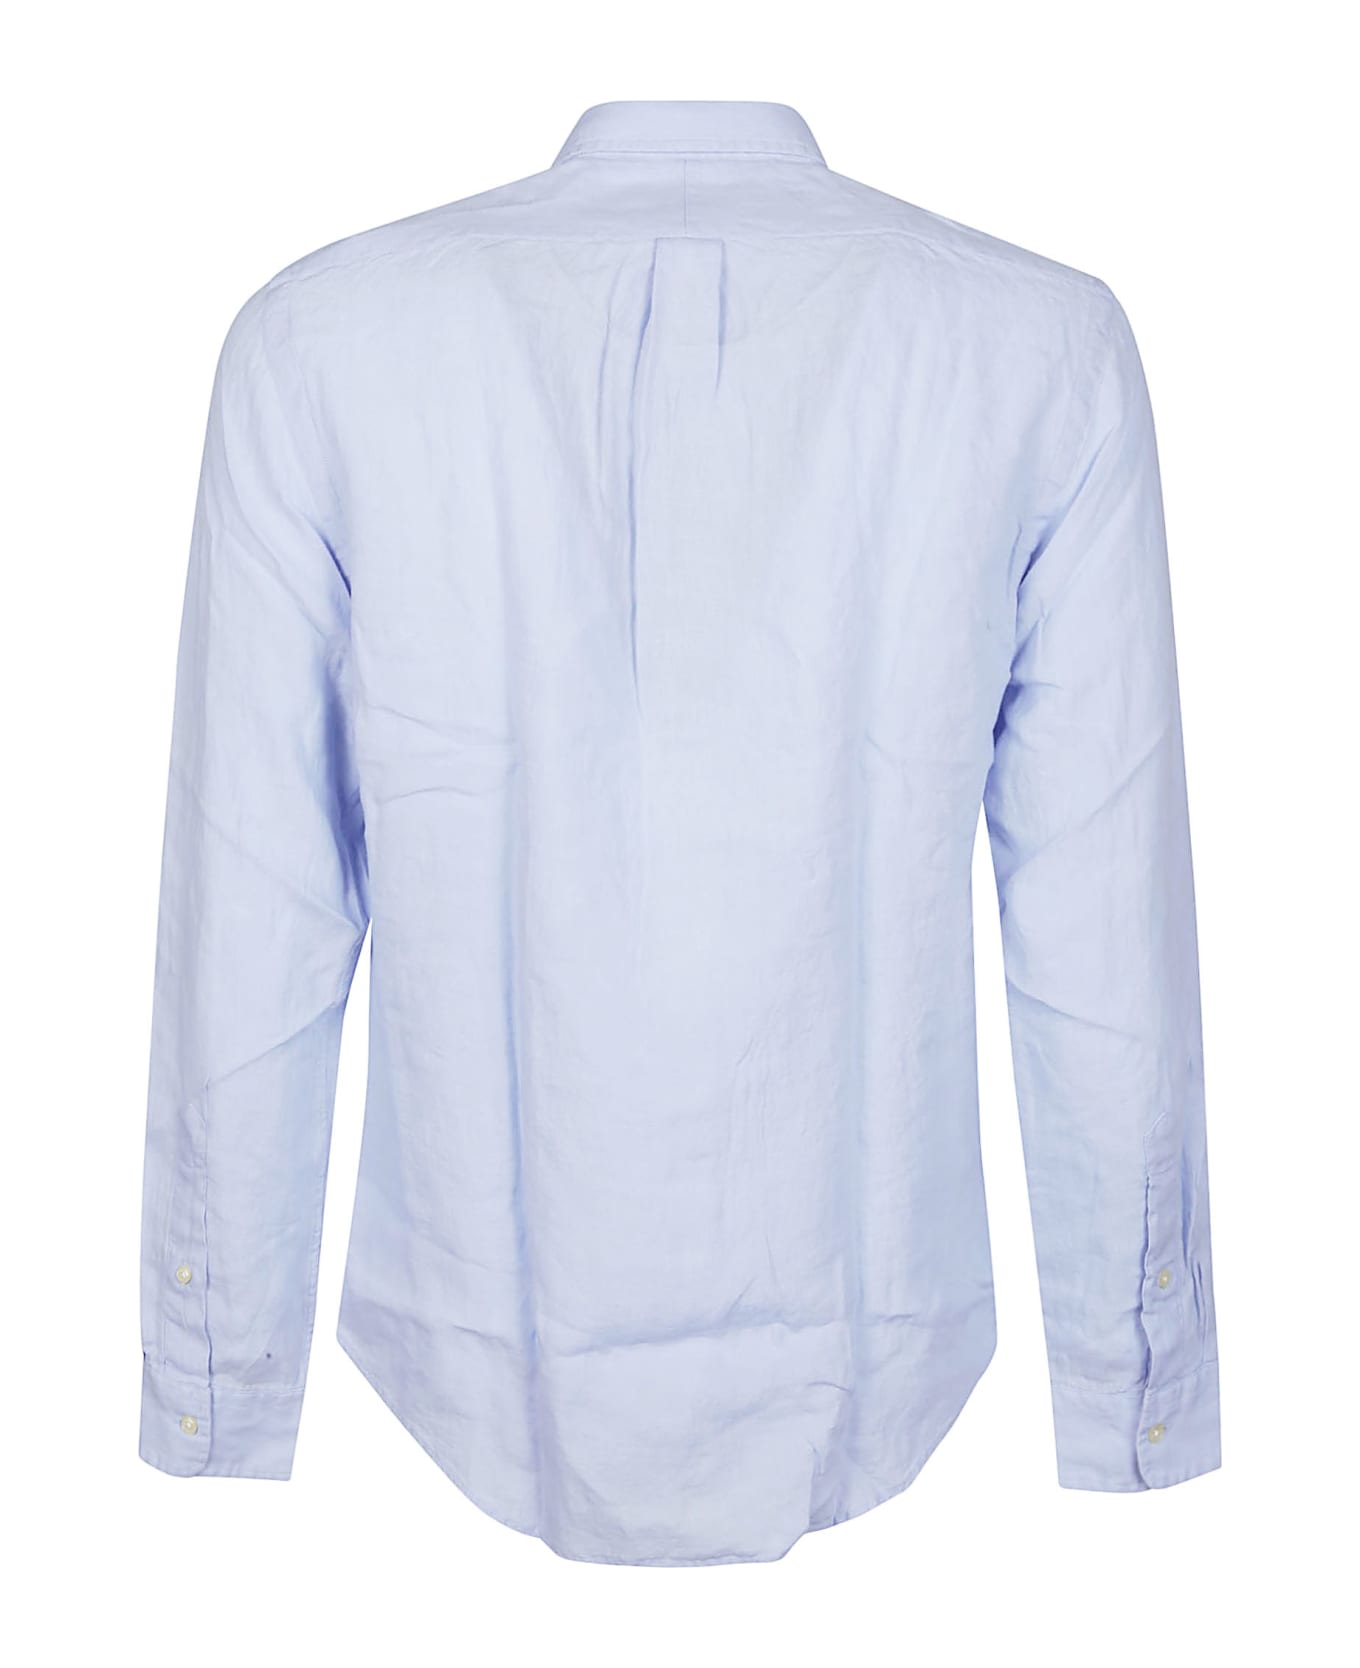 Ralph Lauren Long Sleeve Sport Shirt - BLUE HYACINTH